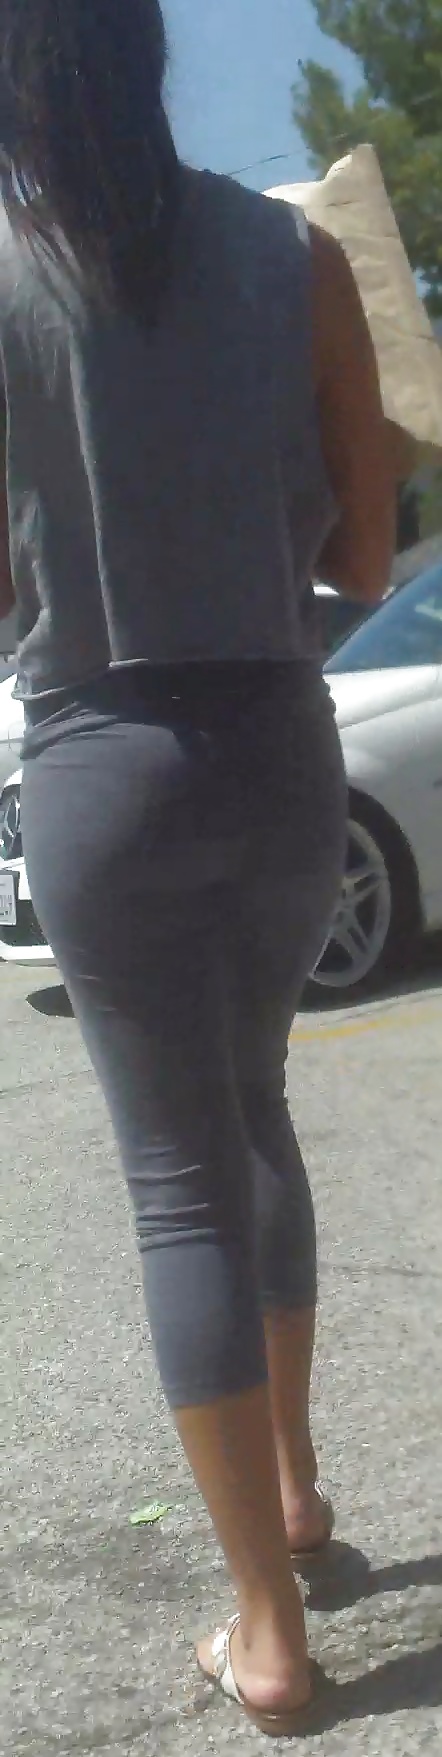 Popular teen girls ass & butt in jeans part 4  #26740074